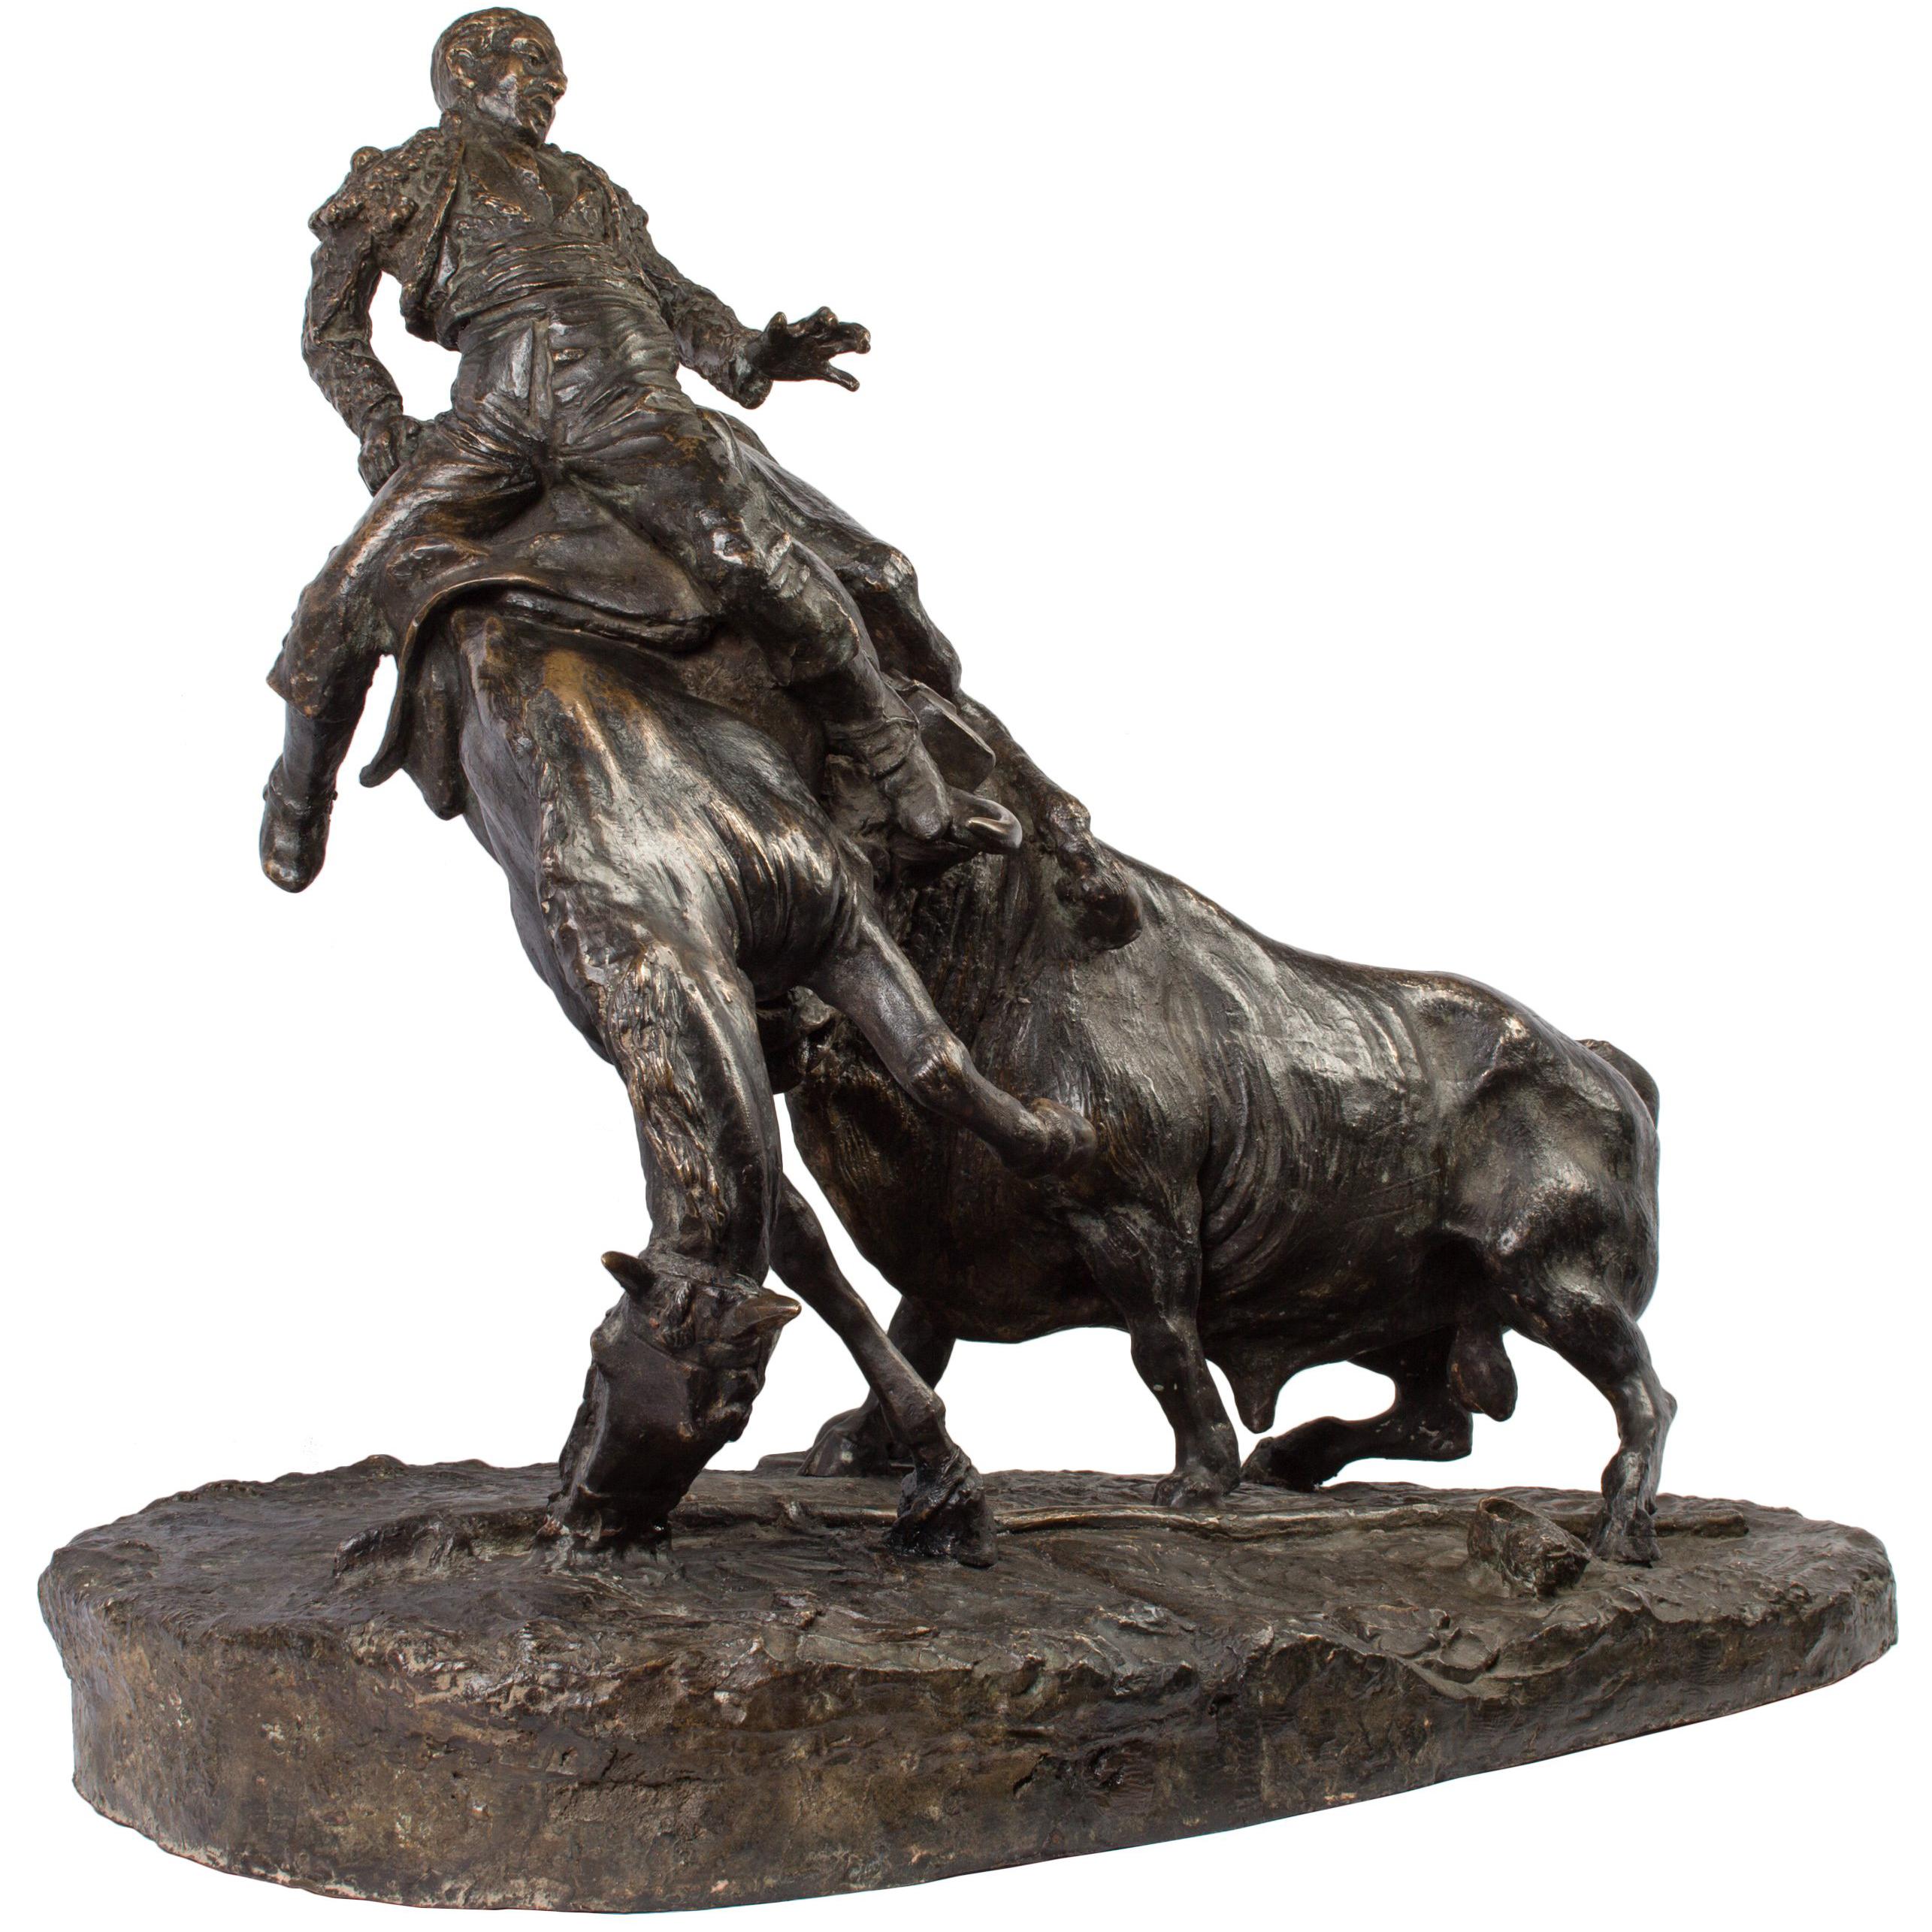 Ce bronze très dynamique d'un taureau attaquant un picador à cheval a été créé par le sculpteur espagnol Juan Polo Velasco en 1948. Né en 1923 dans la ville andalouse de Fernán Núñez, Juan Polo a commencé à sculpter dès son plus jeune âge, a